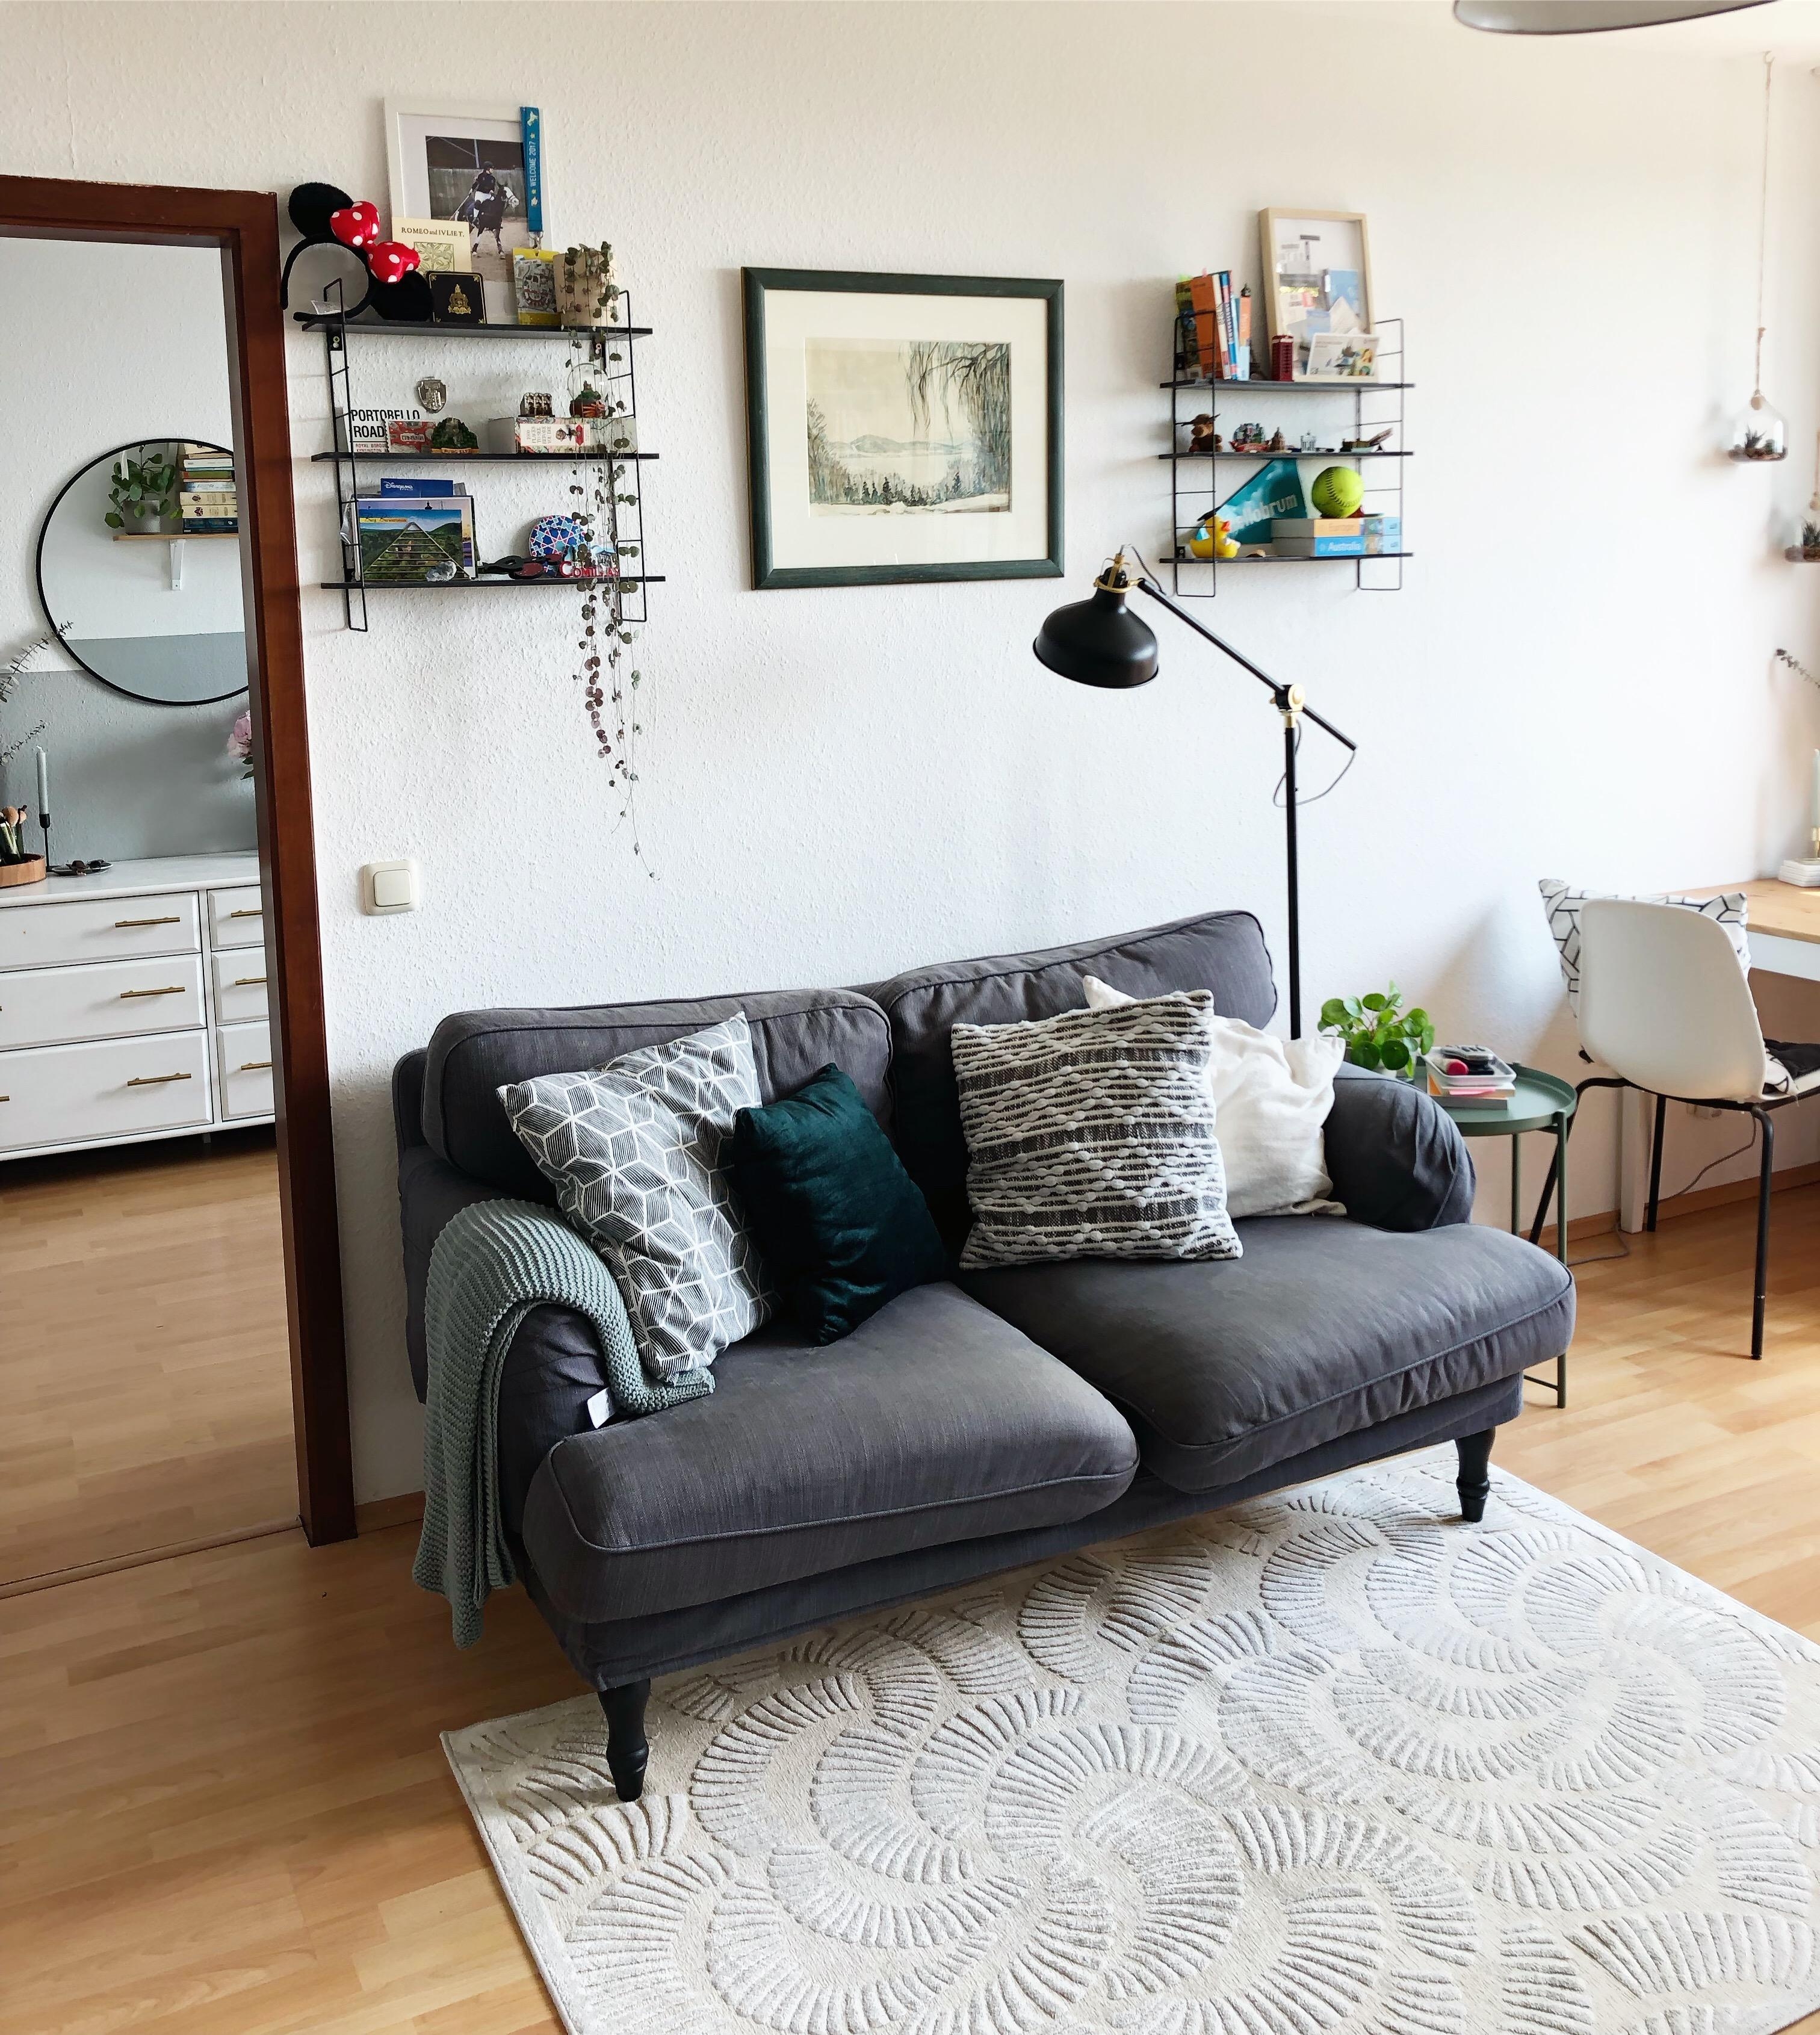 #scandistyle #sofa #couch #kissen #grün #neutrals #stringregal #wohnzimmer #livingroom